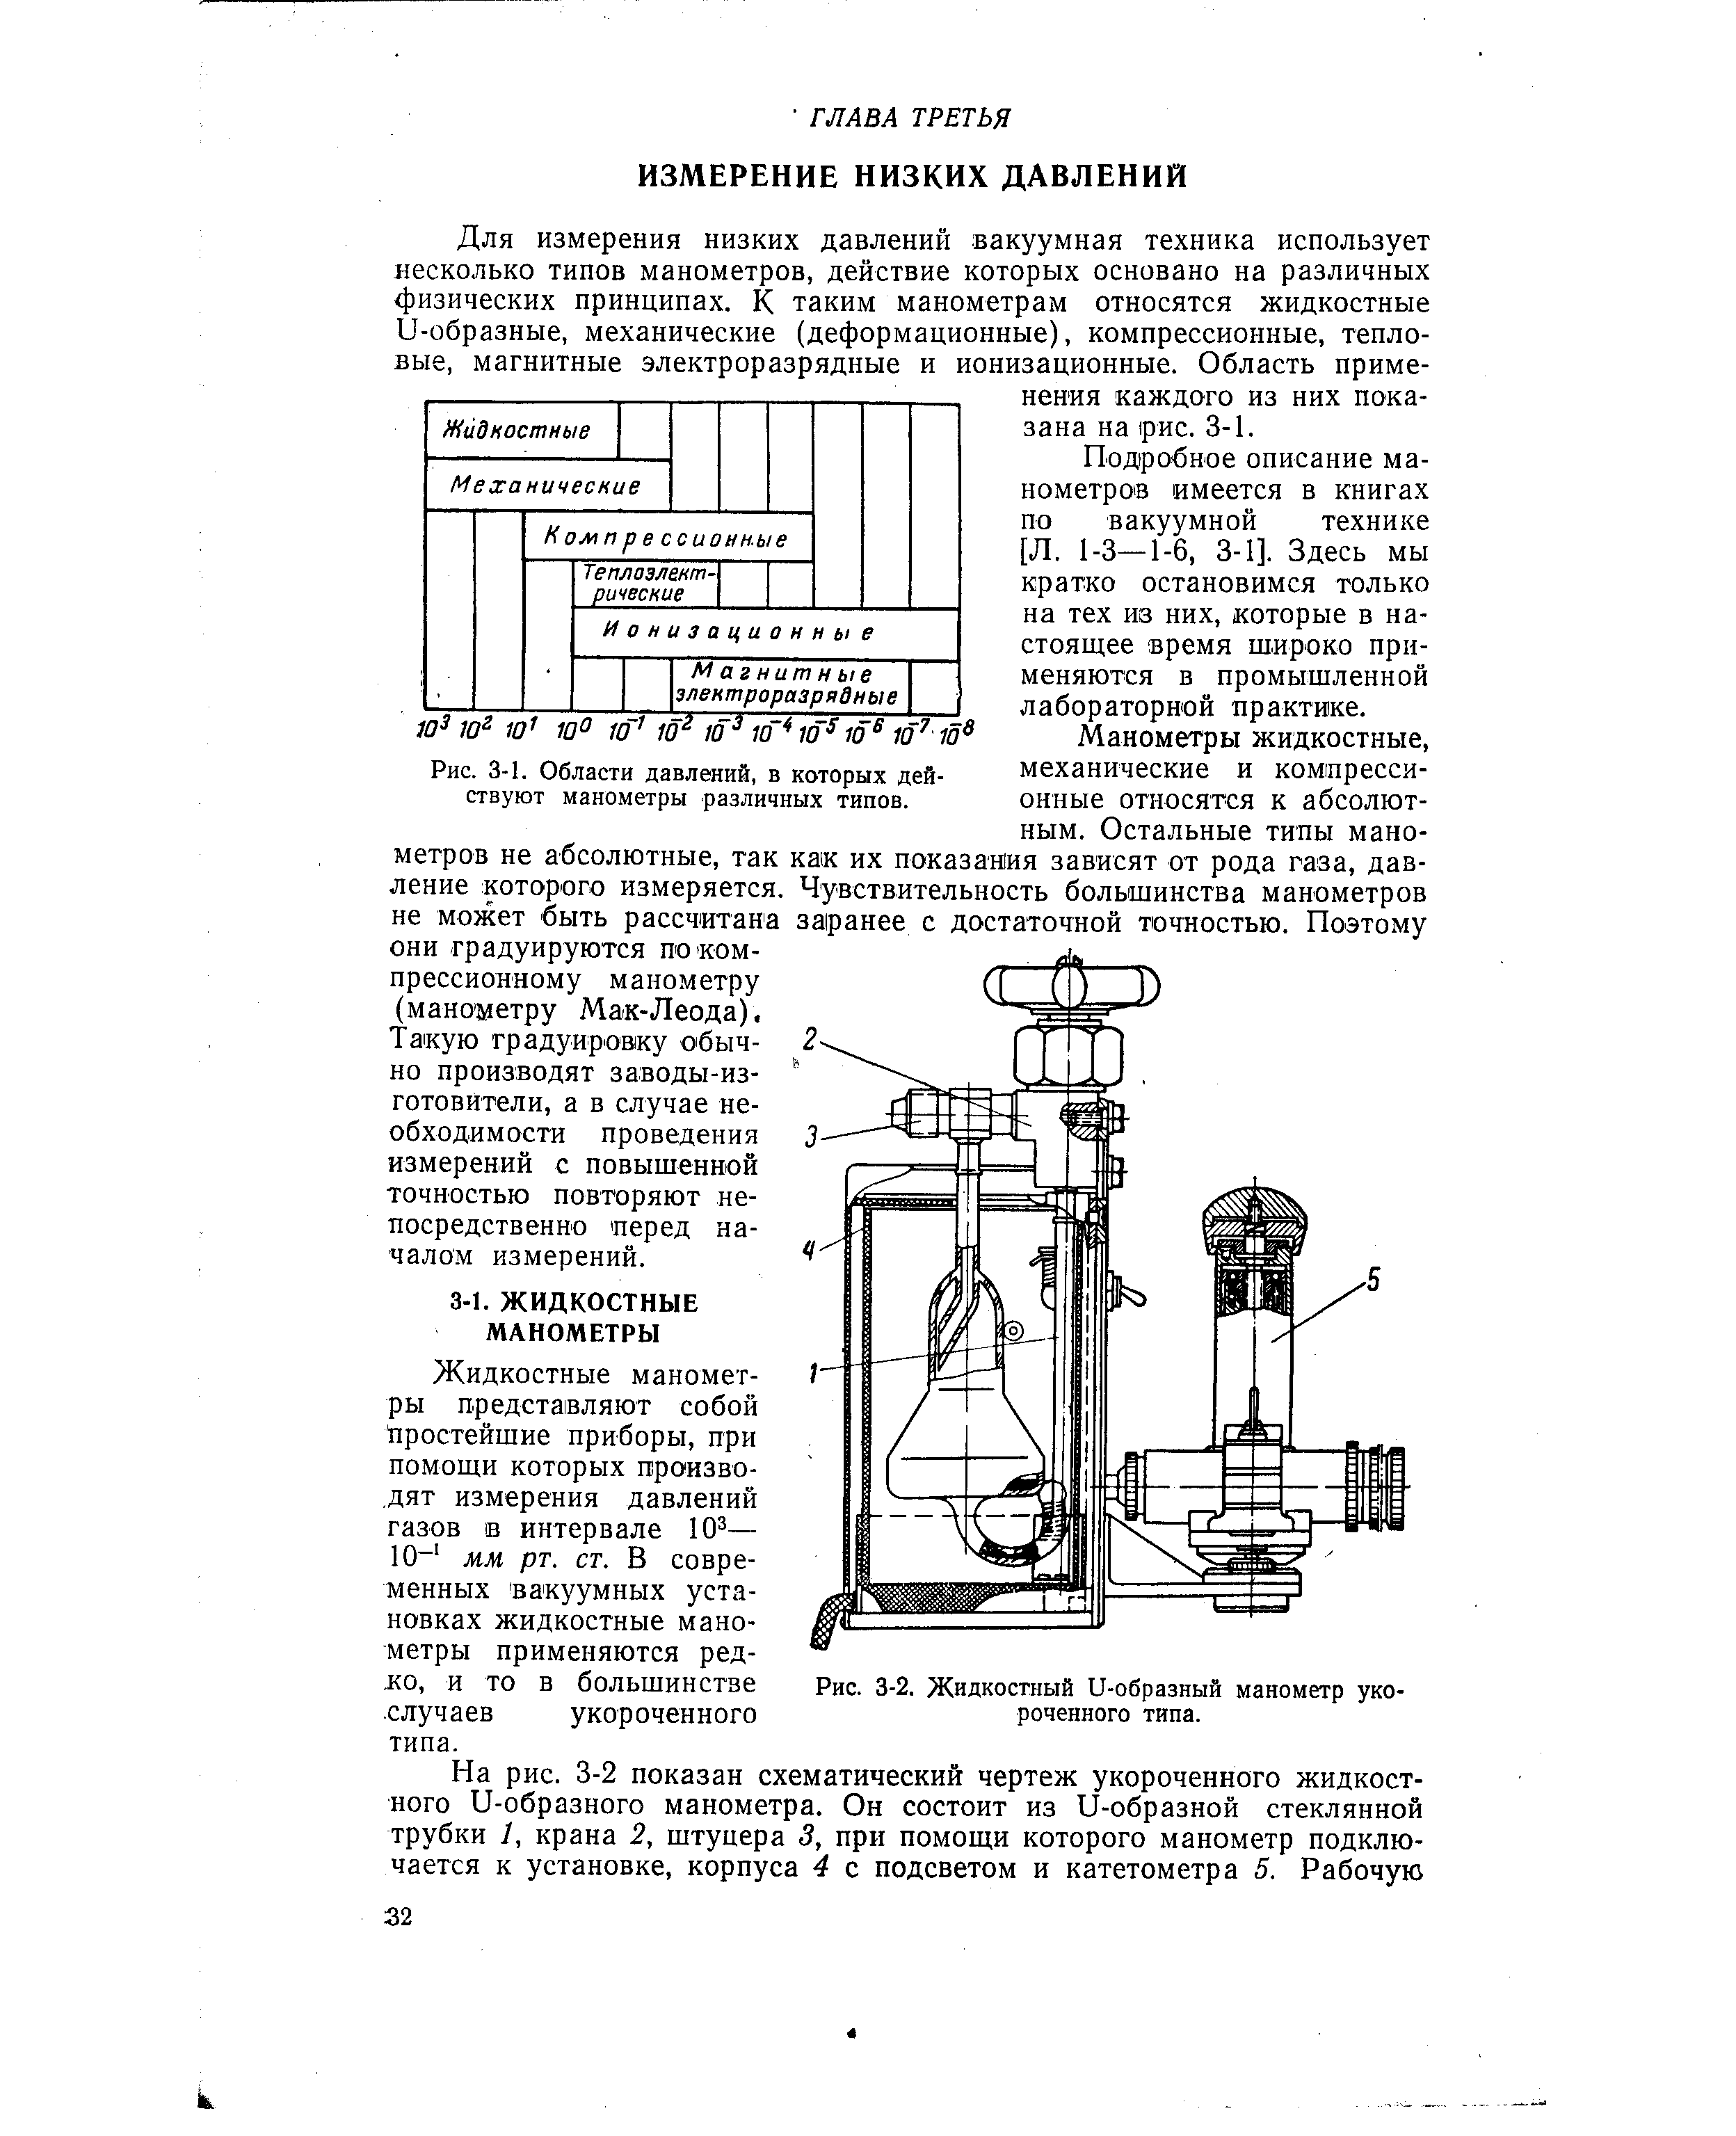 Для измерения низких давлений вакуумная техника использует несколько типов манометров, действие которых основано на различных физических принципах. К таким манометрам относятся жидкостные О-образные, механические (деформационные), компрессионные, тепловые, магнитные электроразрядные и ионизационные. Область применения каждого из них показана на рис. 3-1.
